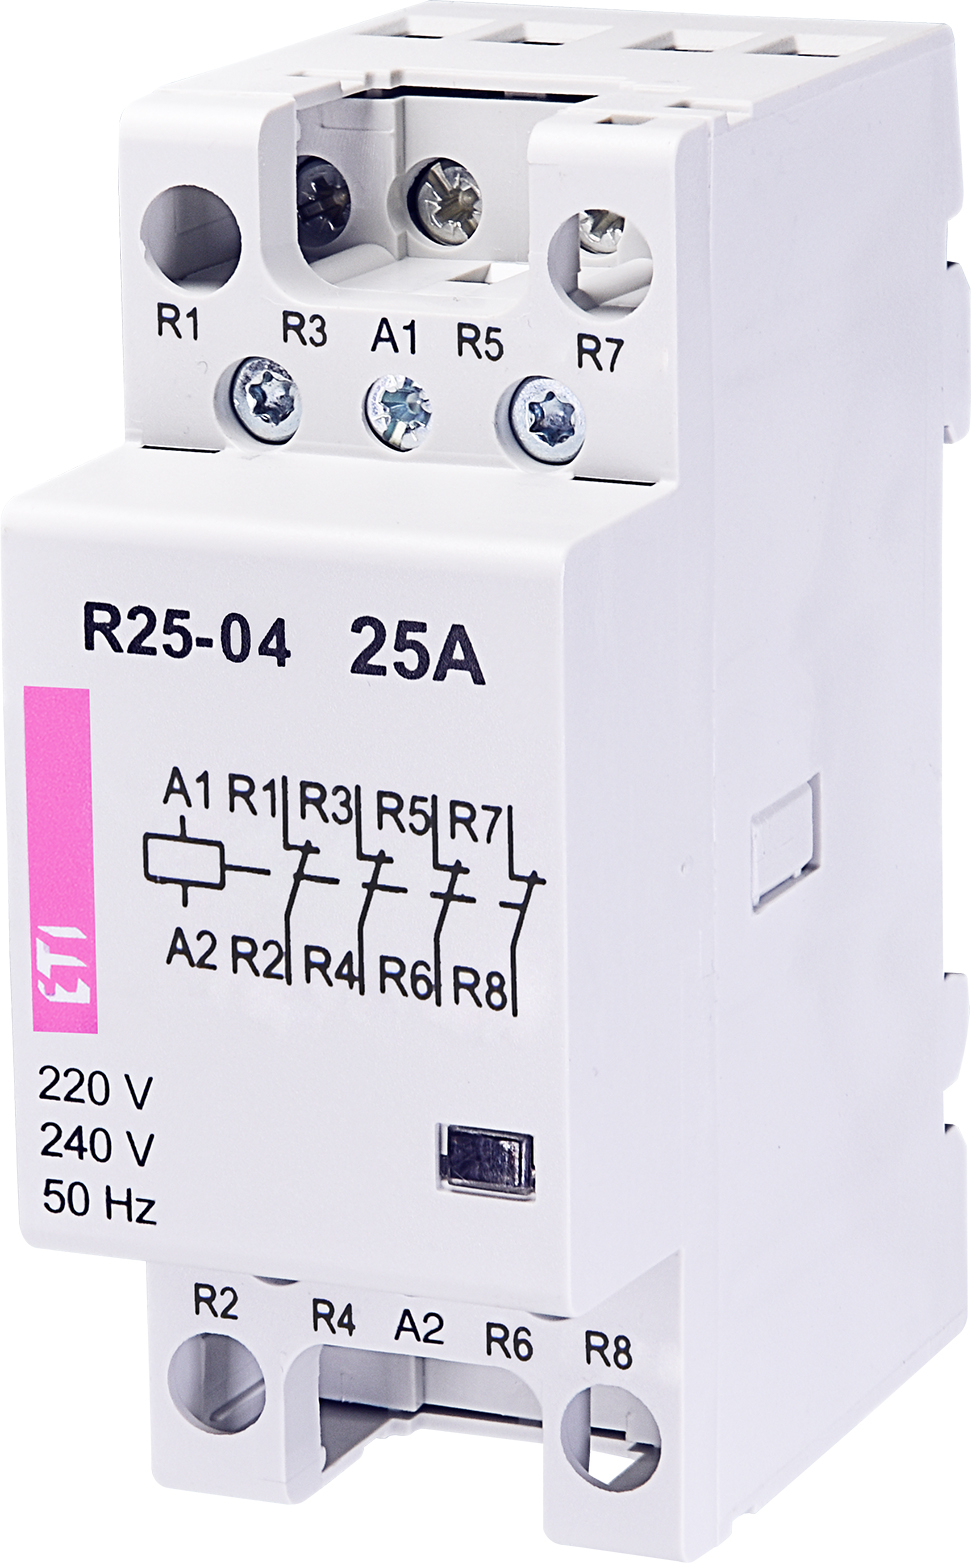 R 25-04 230V modular contactor